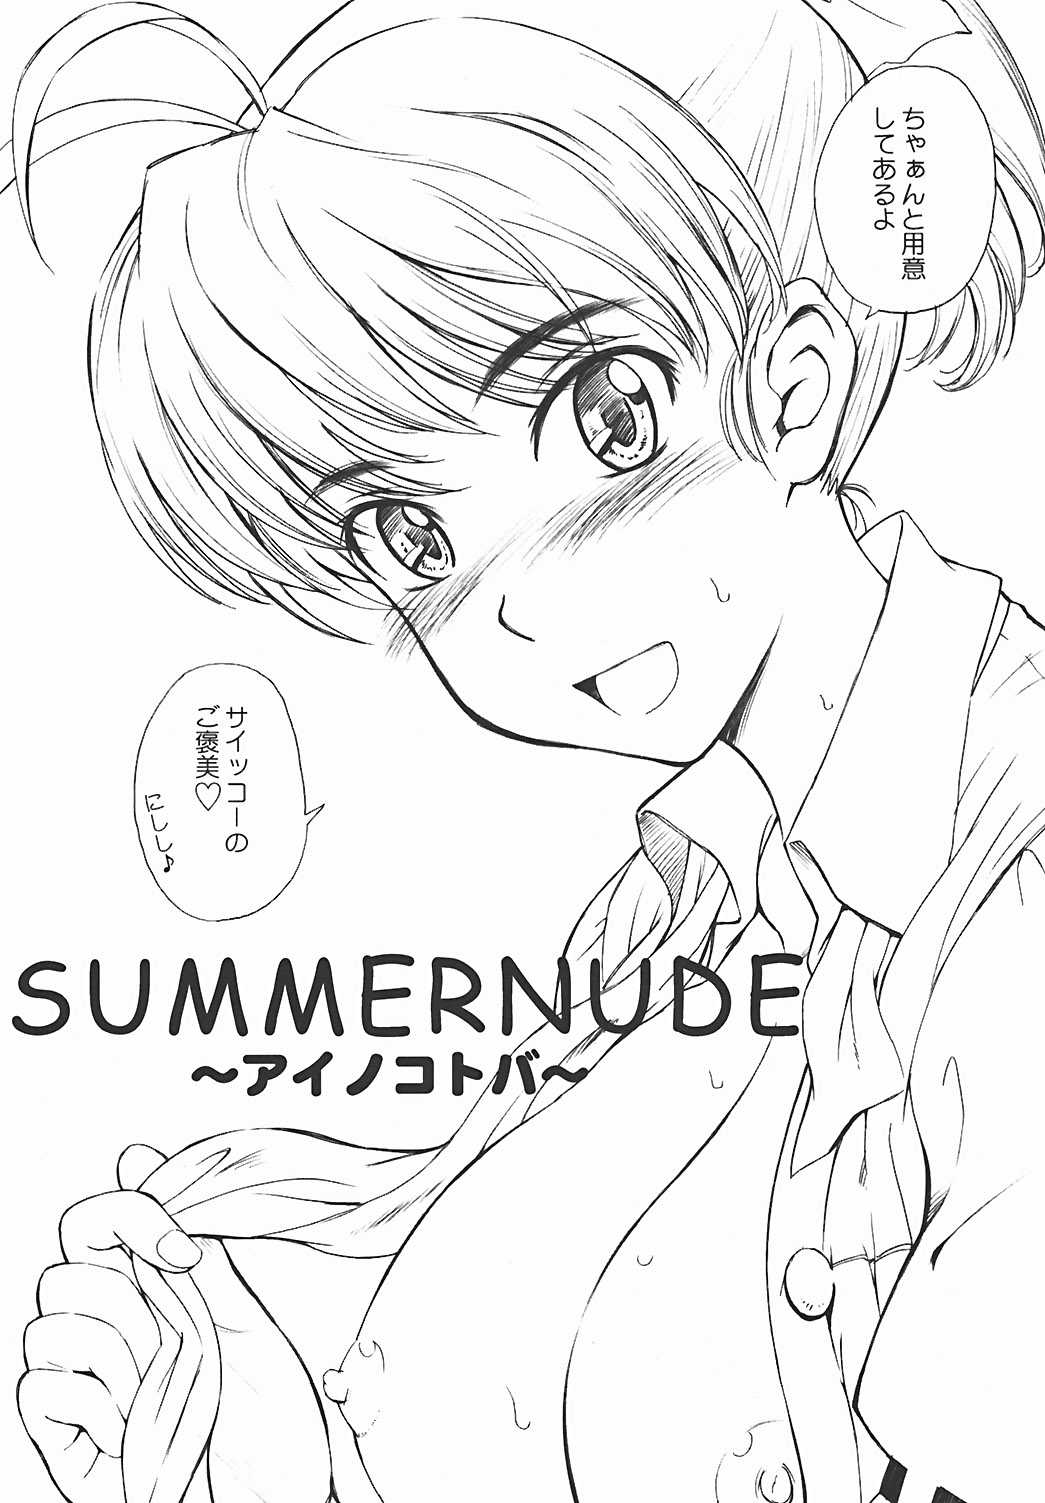 [Tsukino Jyogi] Summer Nude 